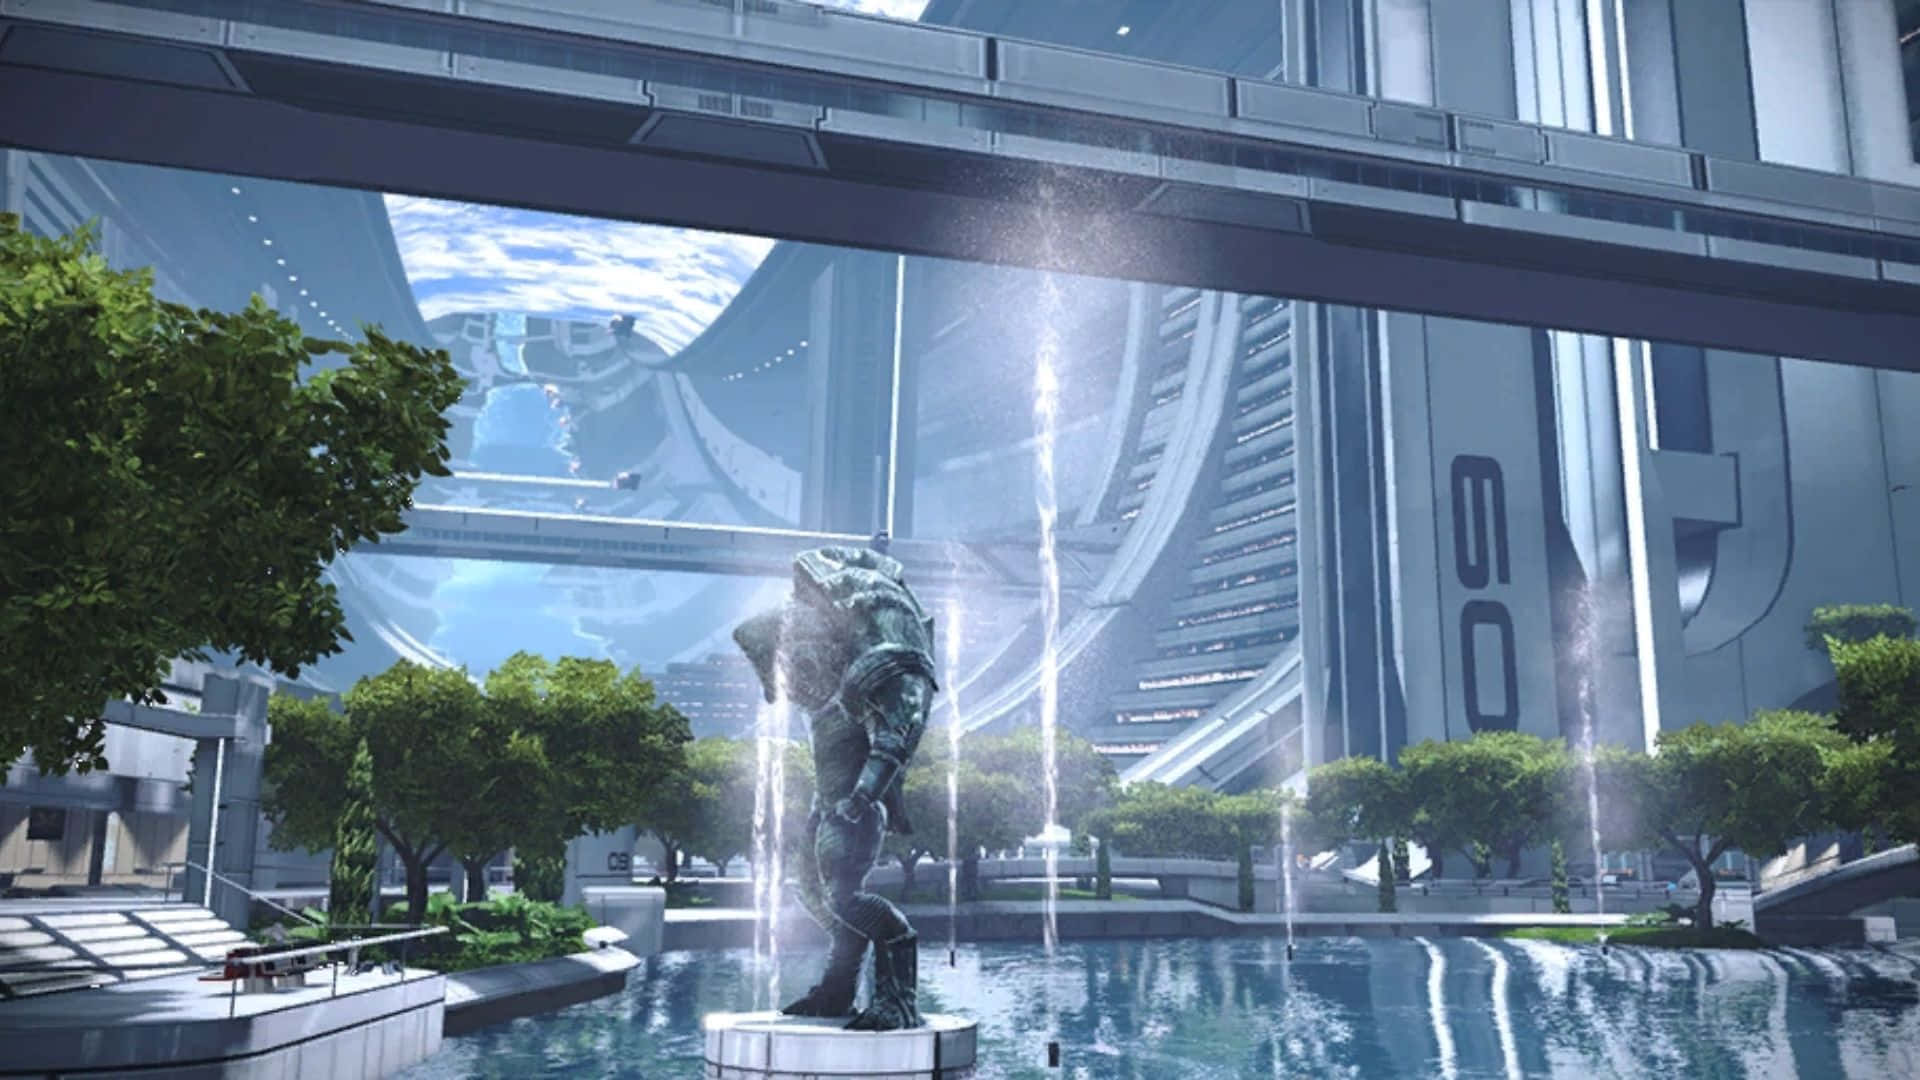 Impresionantevista De La Ciudadela De Mass Effect Iluminando La Galaxia. Fondo de pantalla